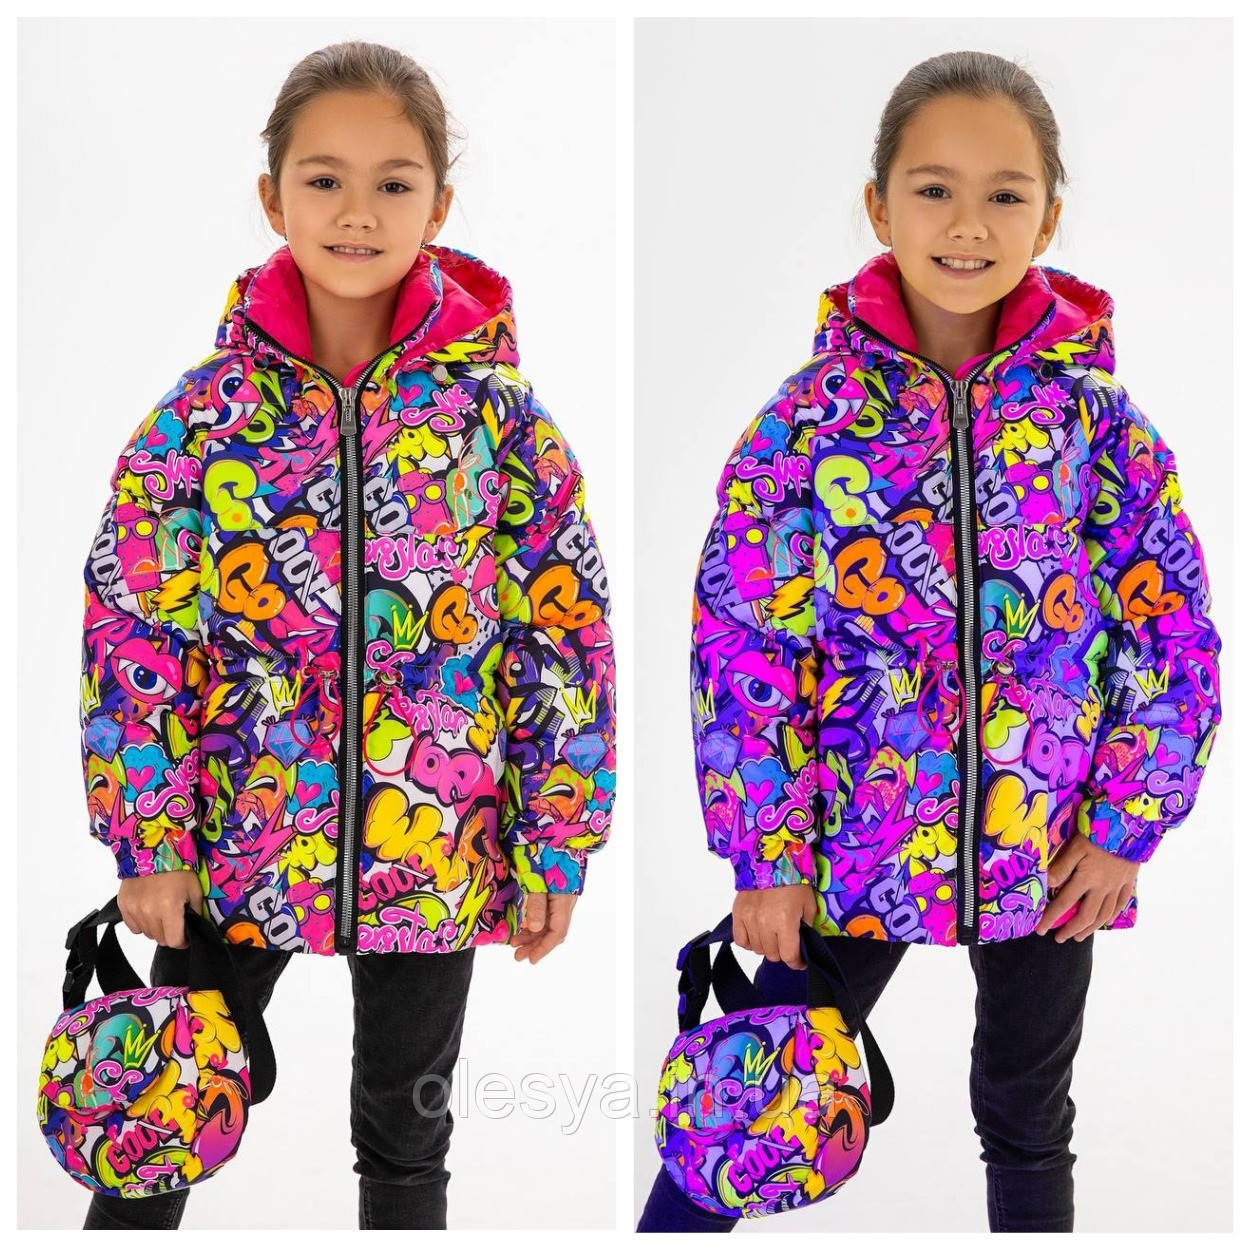 Куртка дитяча COOL - Ультрафіолет 153 з сумкою в комплекті 153 тм MyChance розміри 134 -152, 164